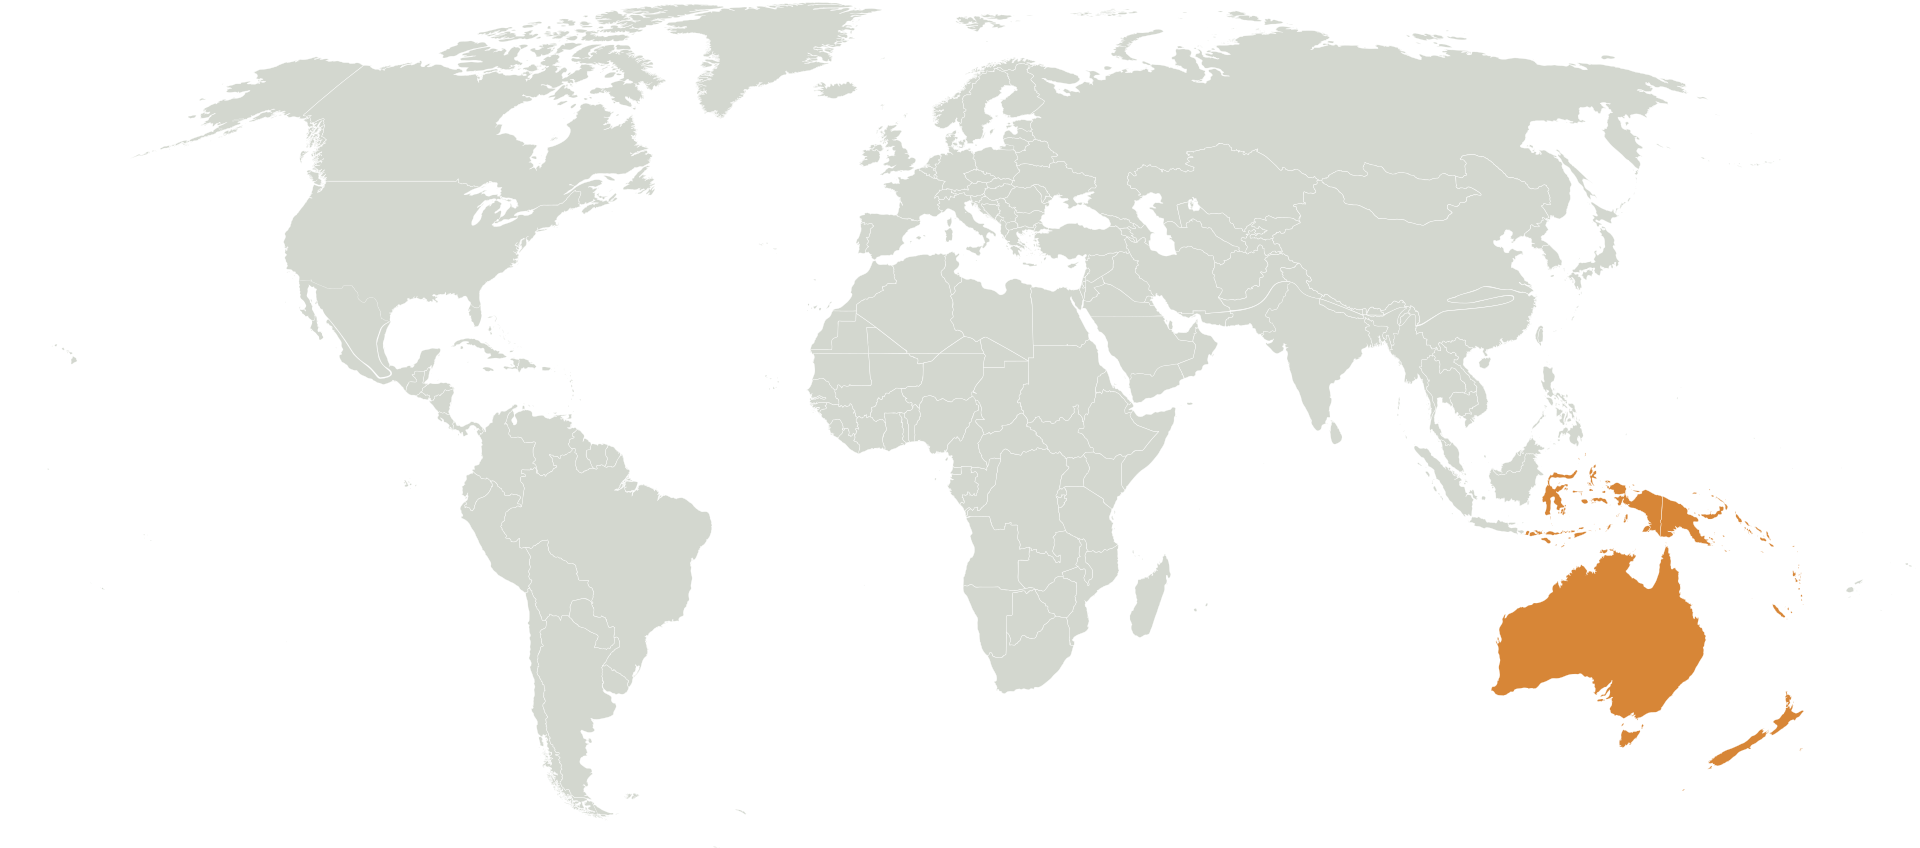 Австралазия - Австралийский материк, Тасмания, Новая Зеландия, Новая Гвинея и прилегающие острова севернее и восточнее Австралии в Тихом океане